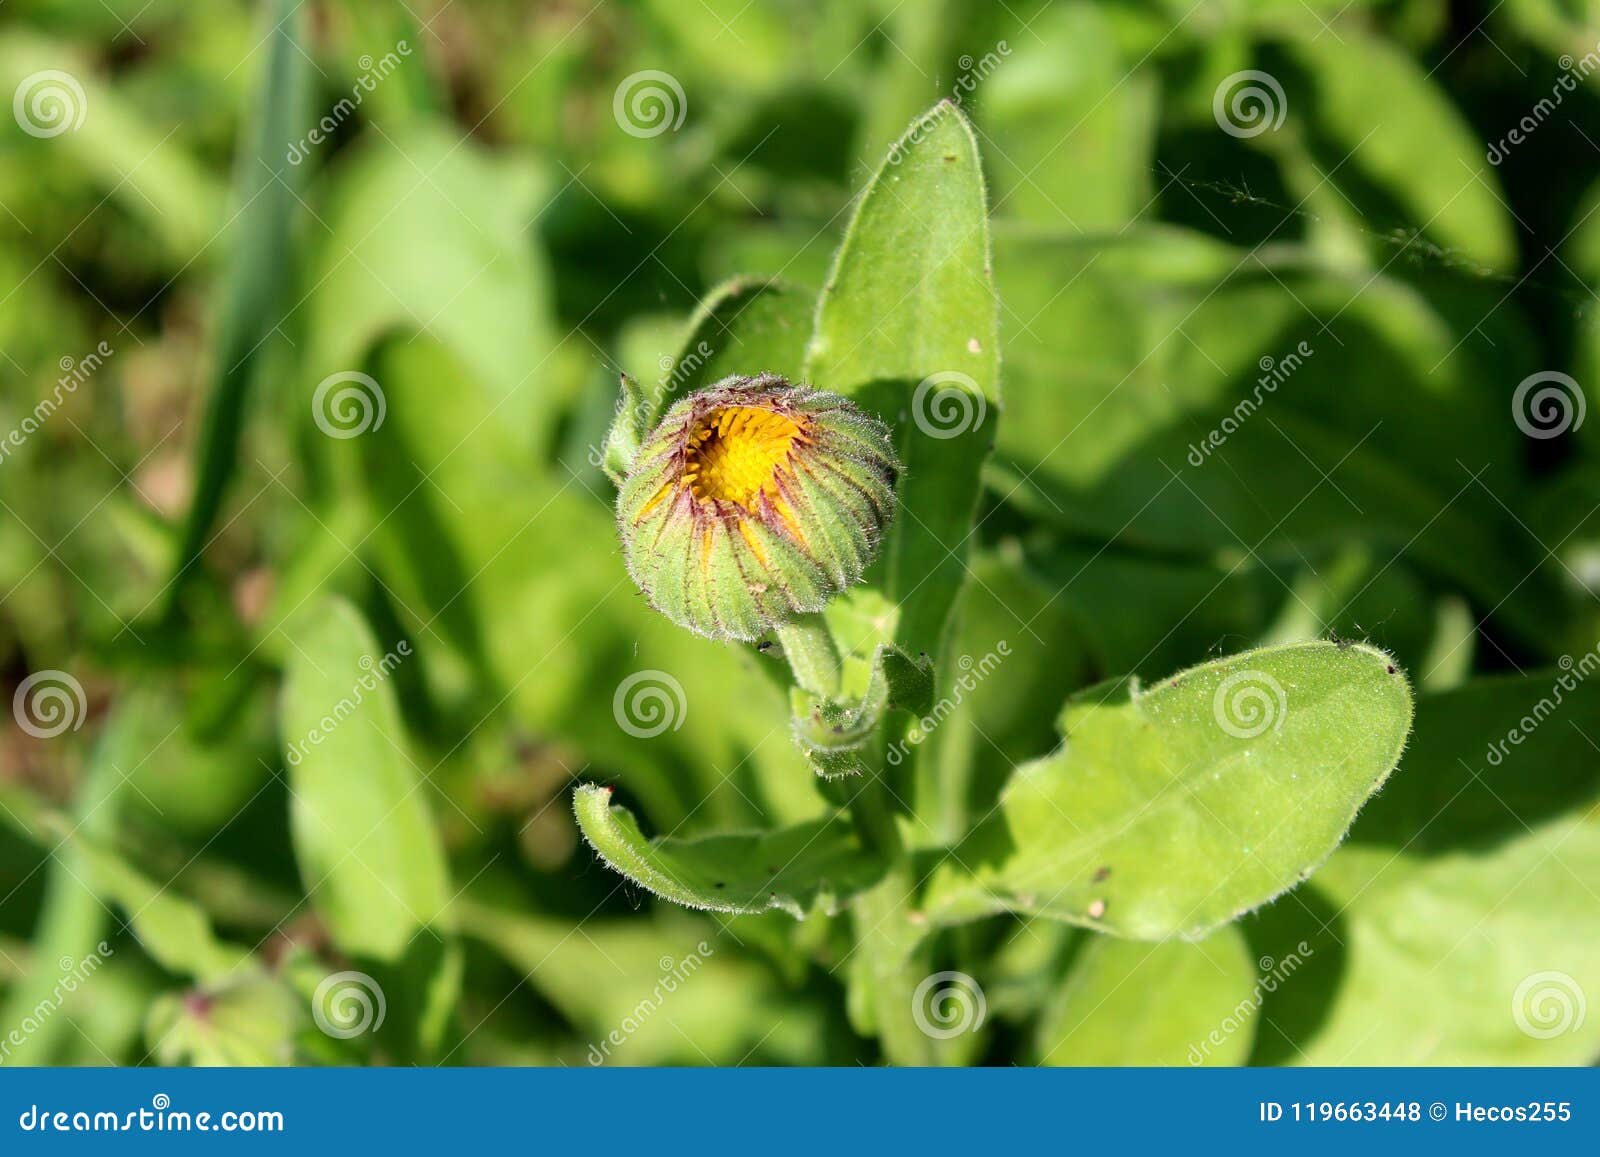 English Marigold Or Calendula Officinalis Orange Flower Bud Stock Photo Image Of Scotch Background 119663448